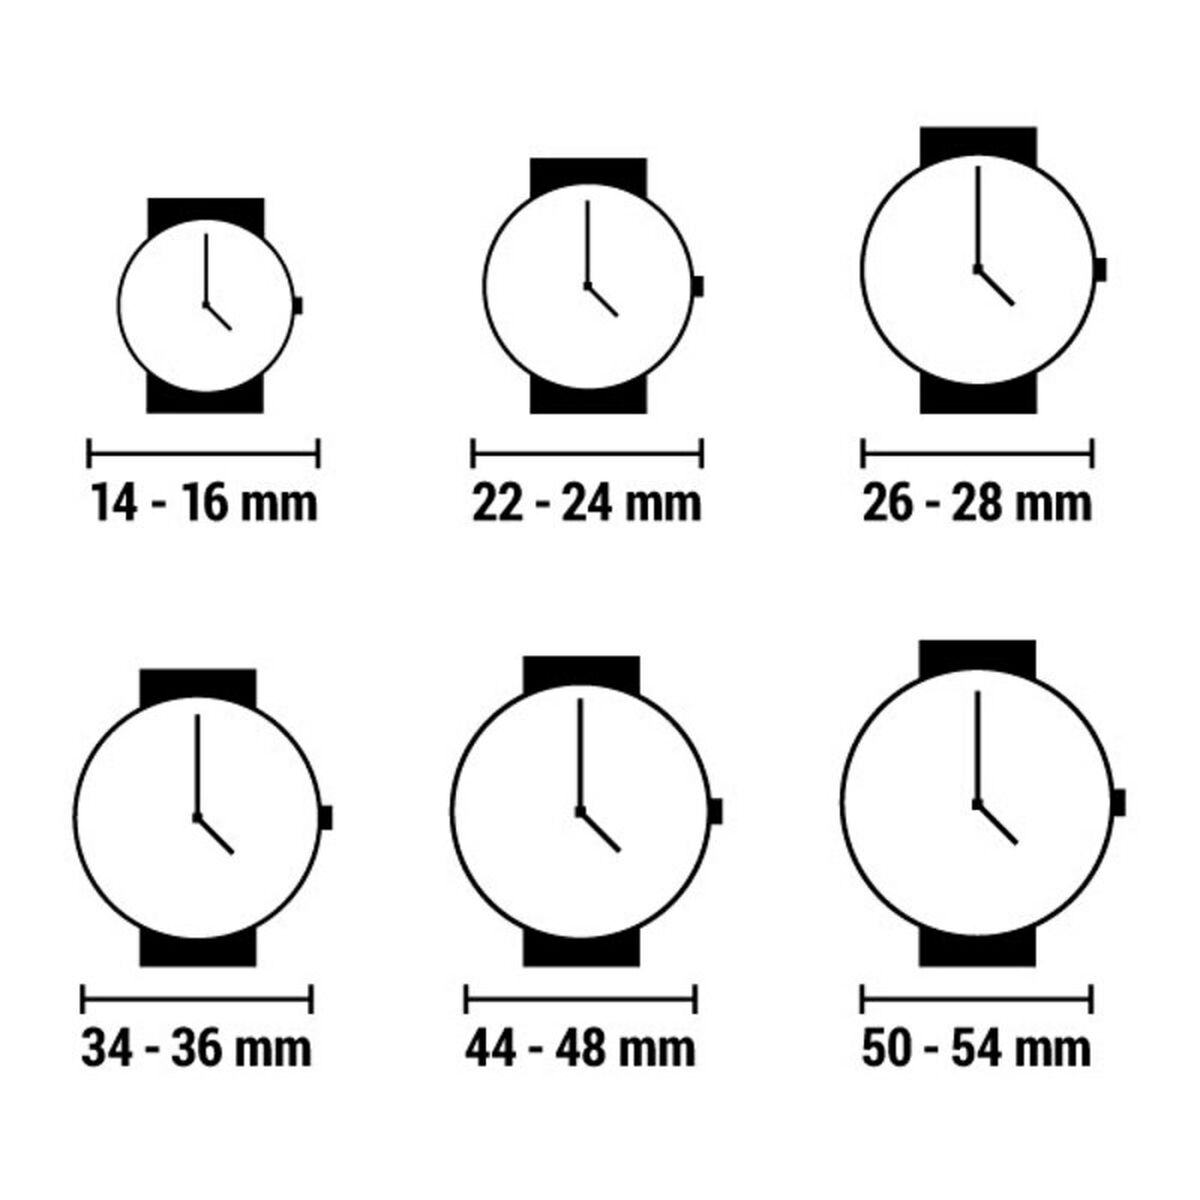 Horloge Dames Watx & Colors RWA1151 (Ø 43 mm)